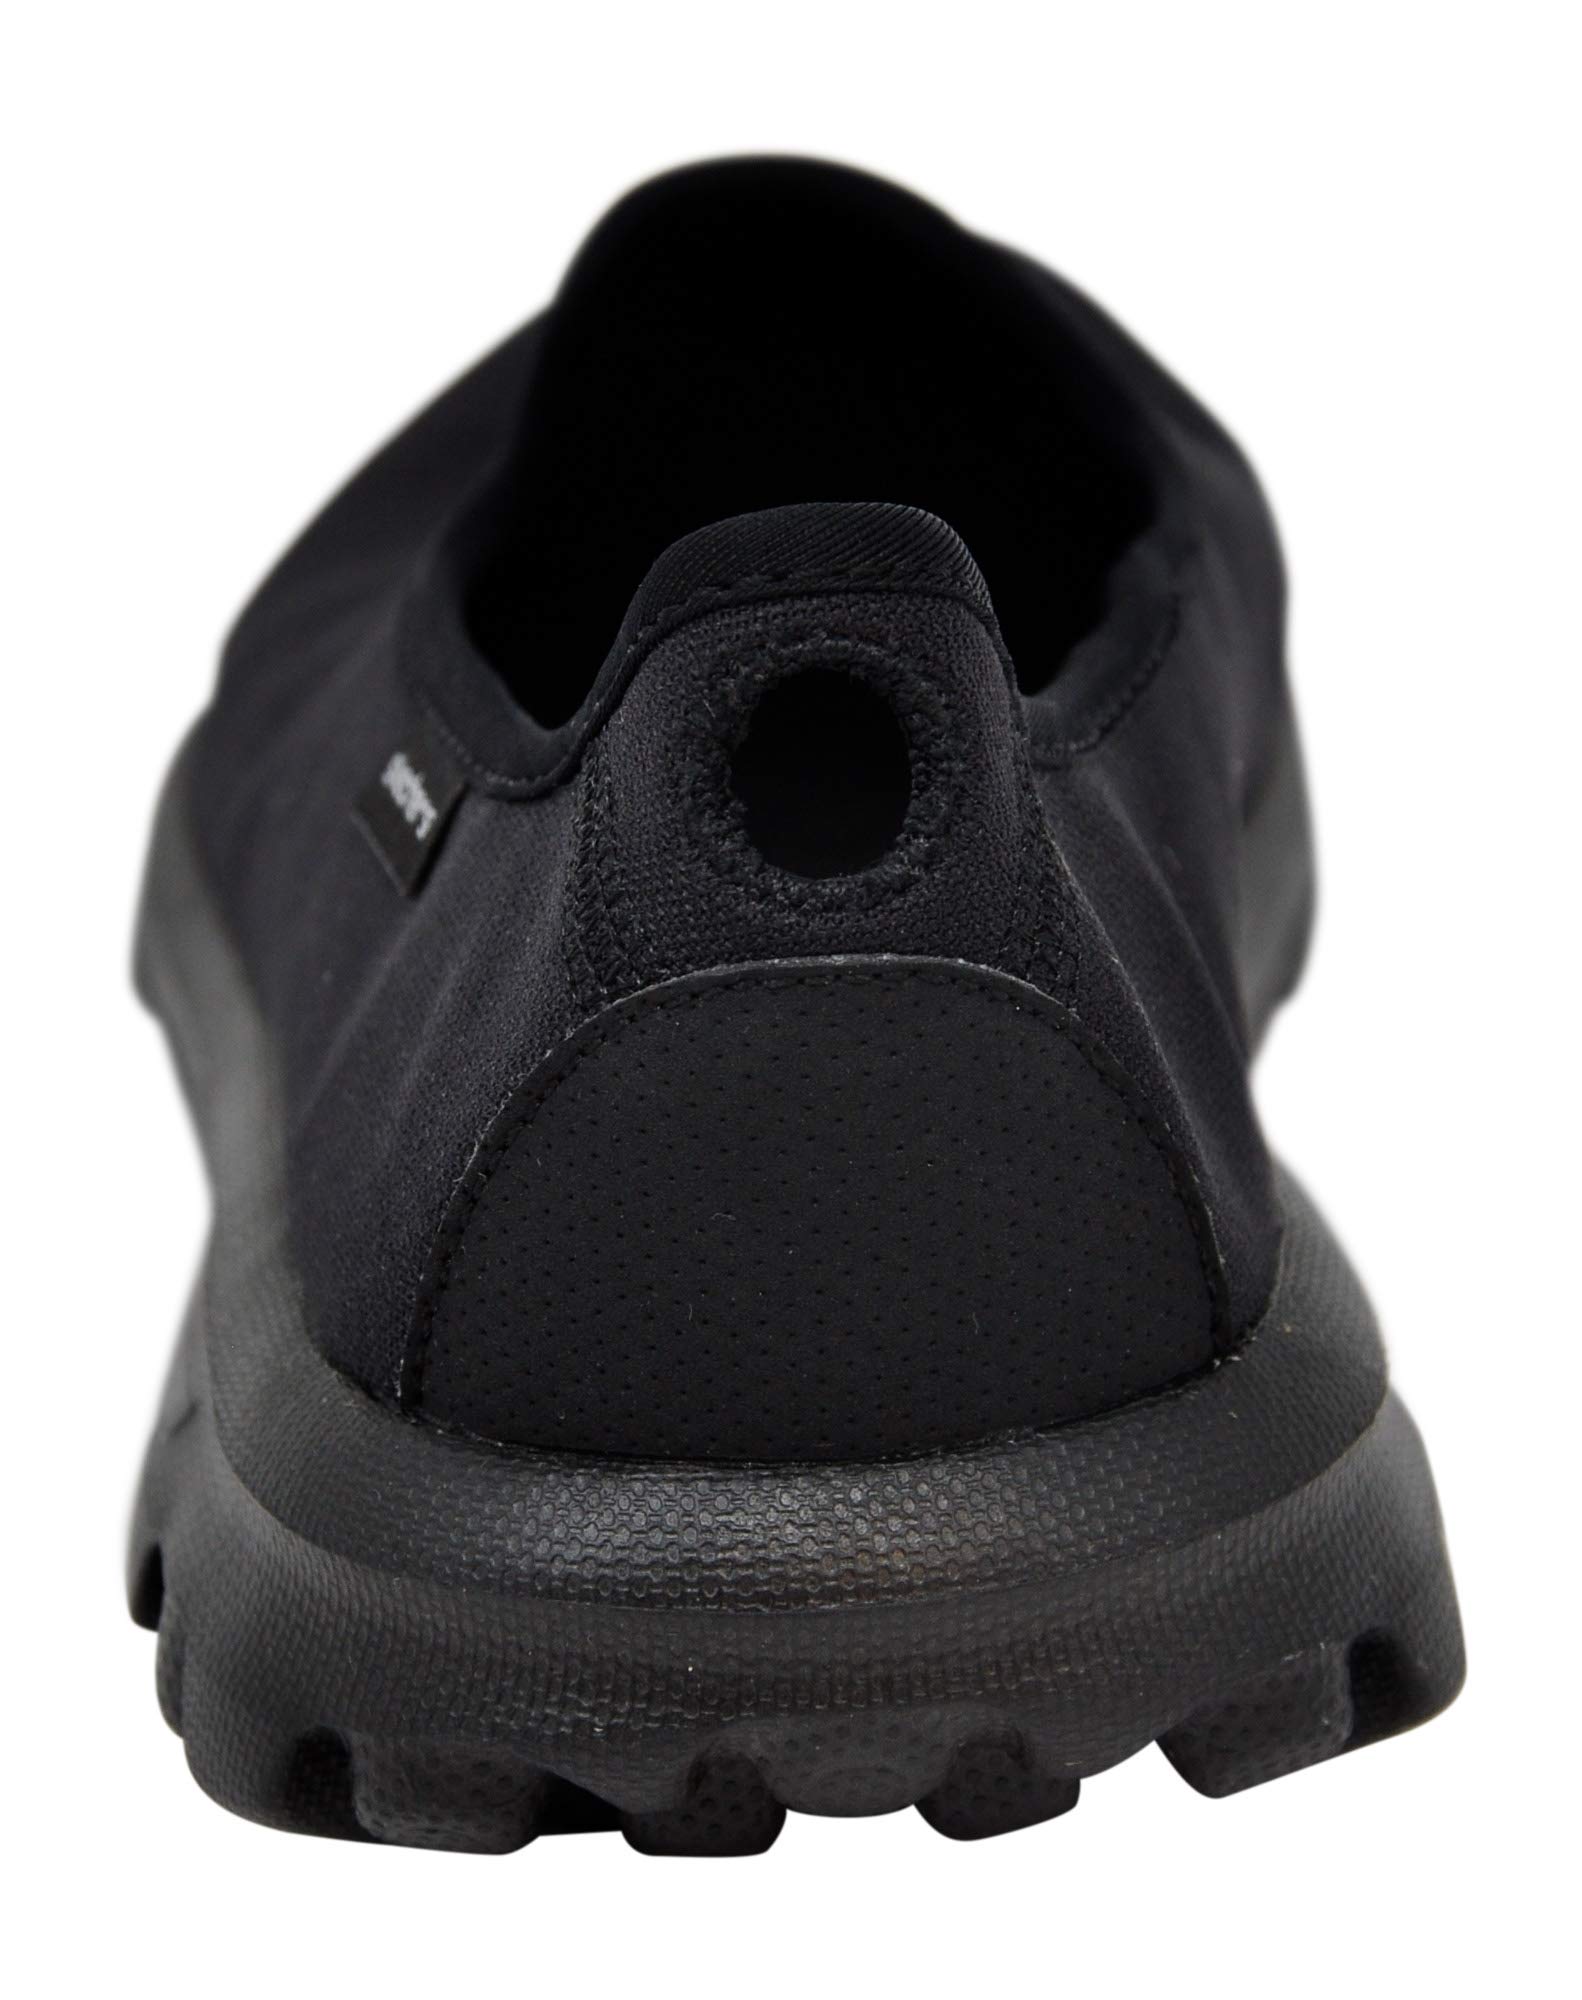 Skechers Performance Women's Go Walk Slip-On Walking Shoe, Black/Charcoal, 8 M US